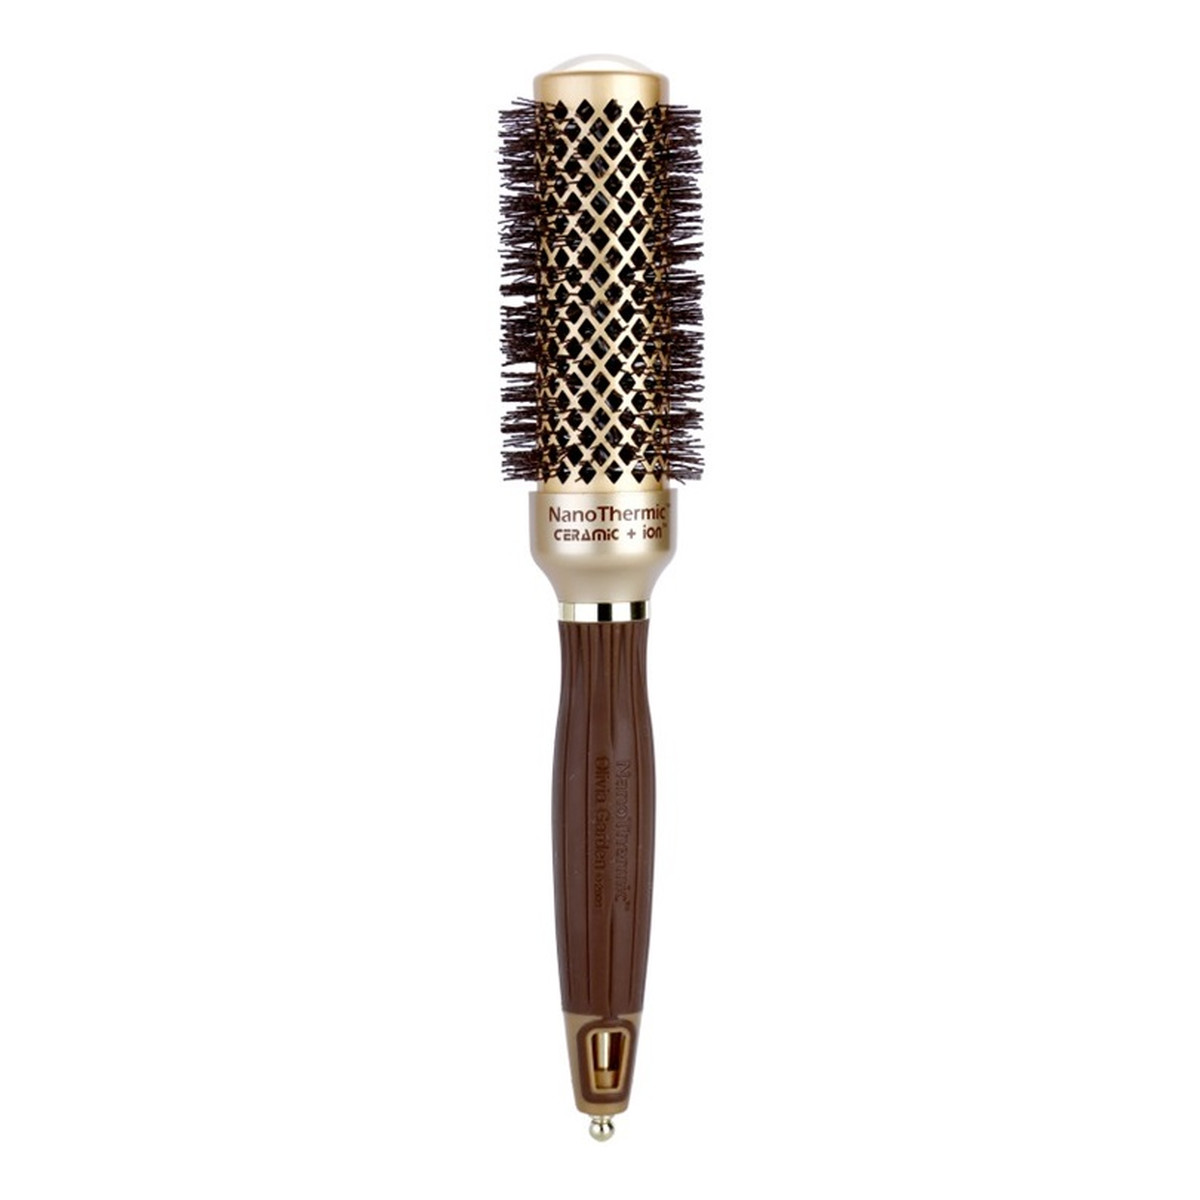 Olivia Garden Nano thermic ceramic+ion round thermal hairbrush szczotka do włosów nt-34